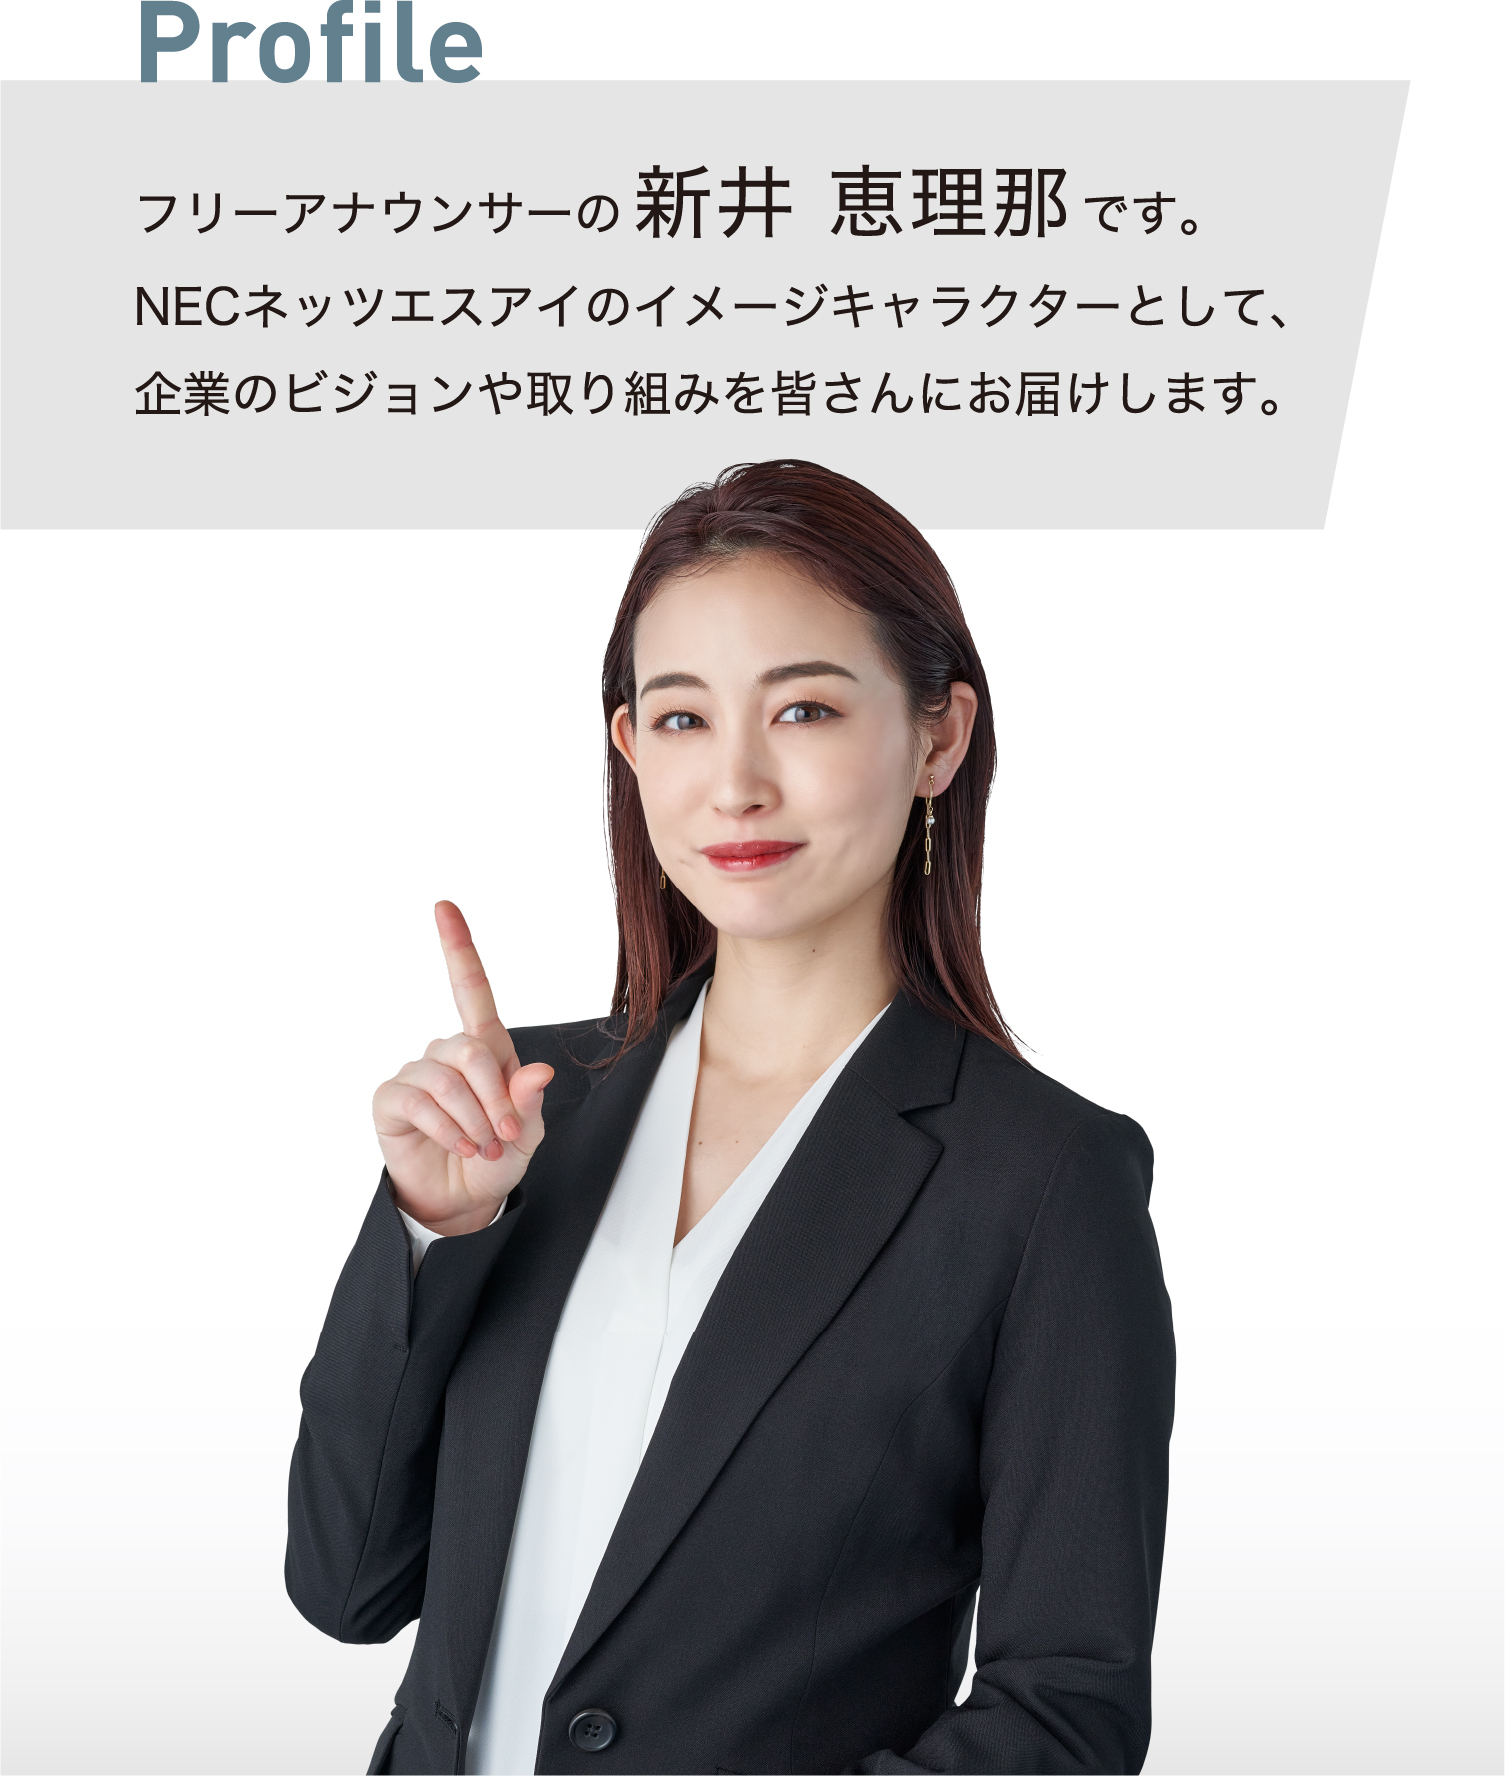 フリーアナウンサーの新井恵理那です。NECネッツエスアイのイメージキャラクターとして、企業のビジョンや取り組みを皆さんにお届けします。